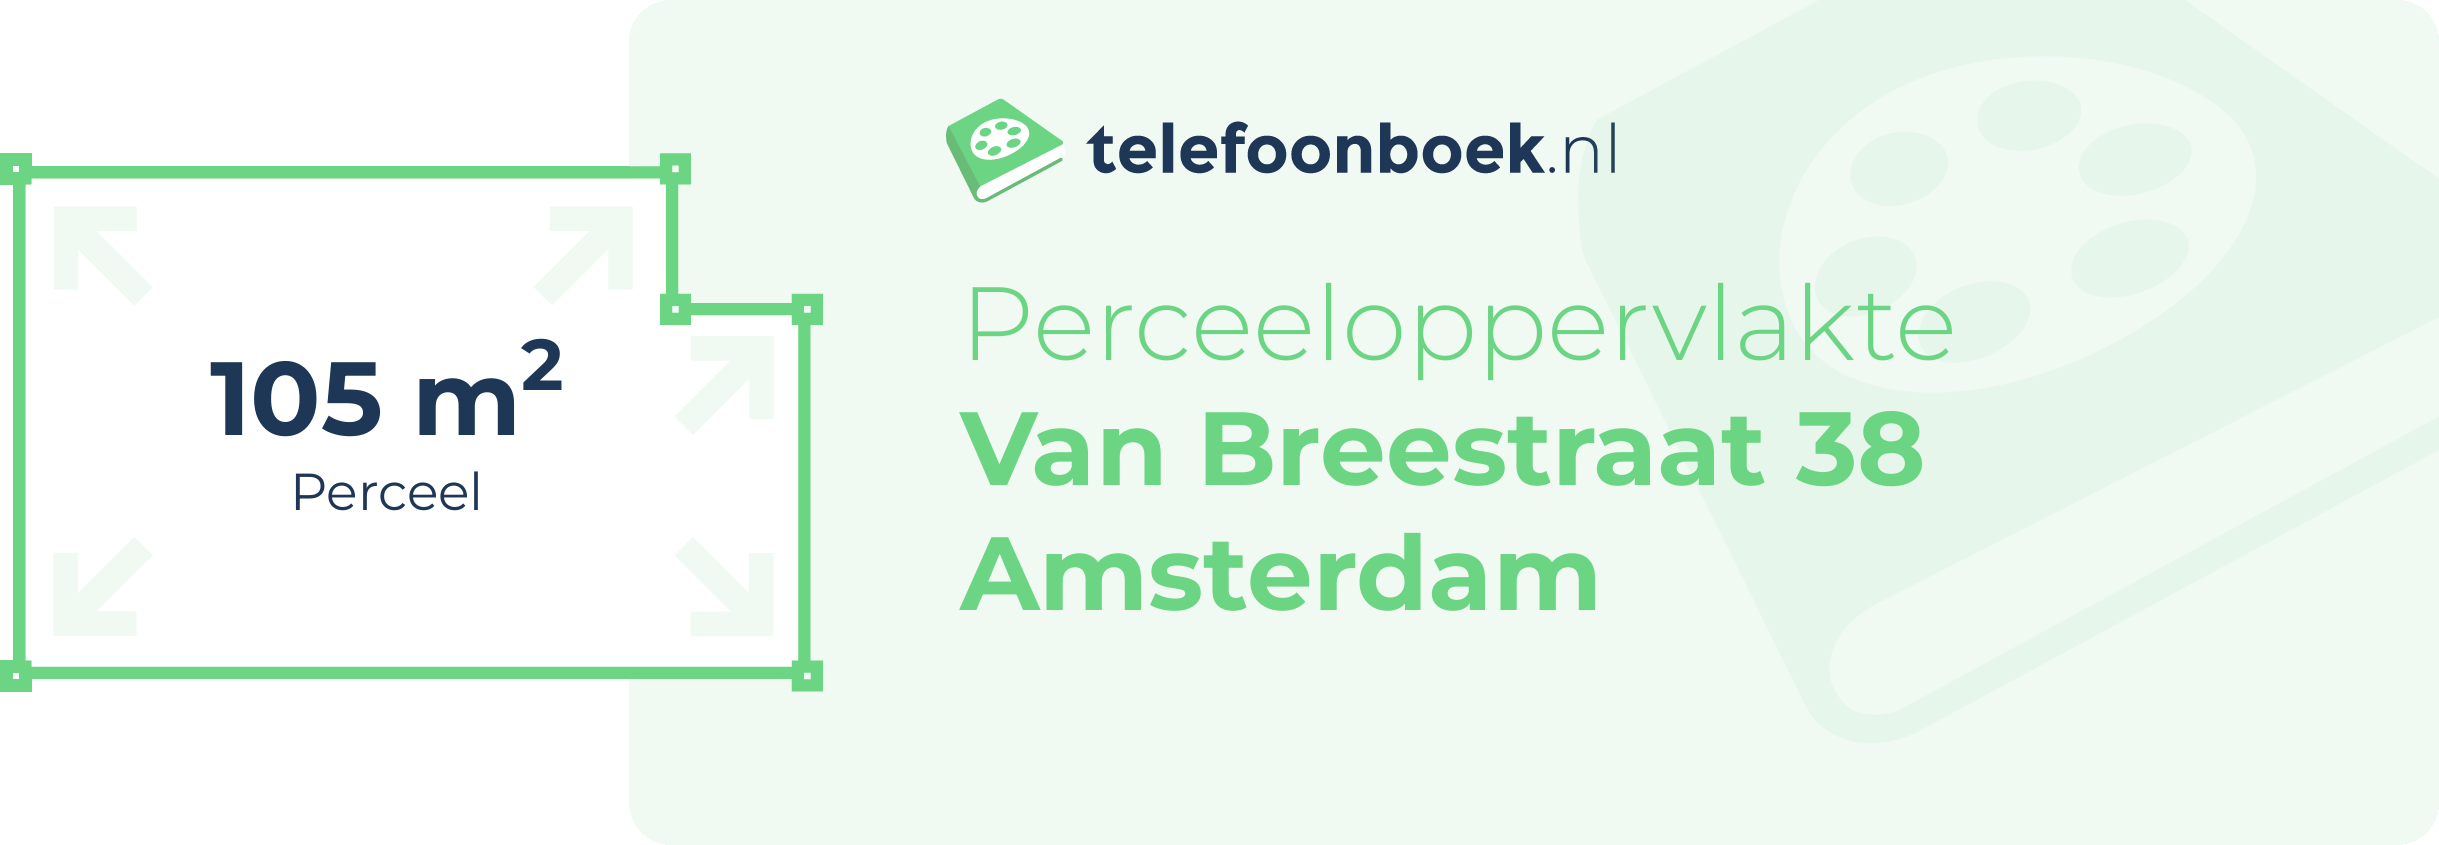 Perceeloppervlakte Van Breestraat 38 Amsterdam